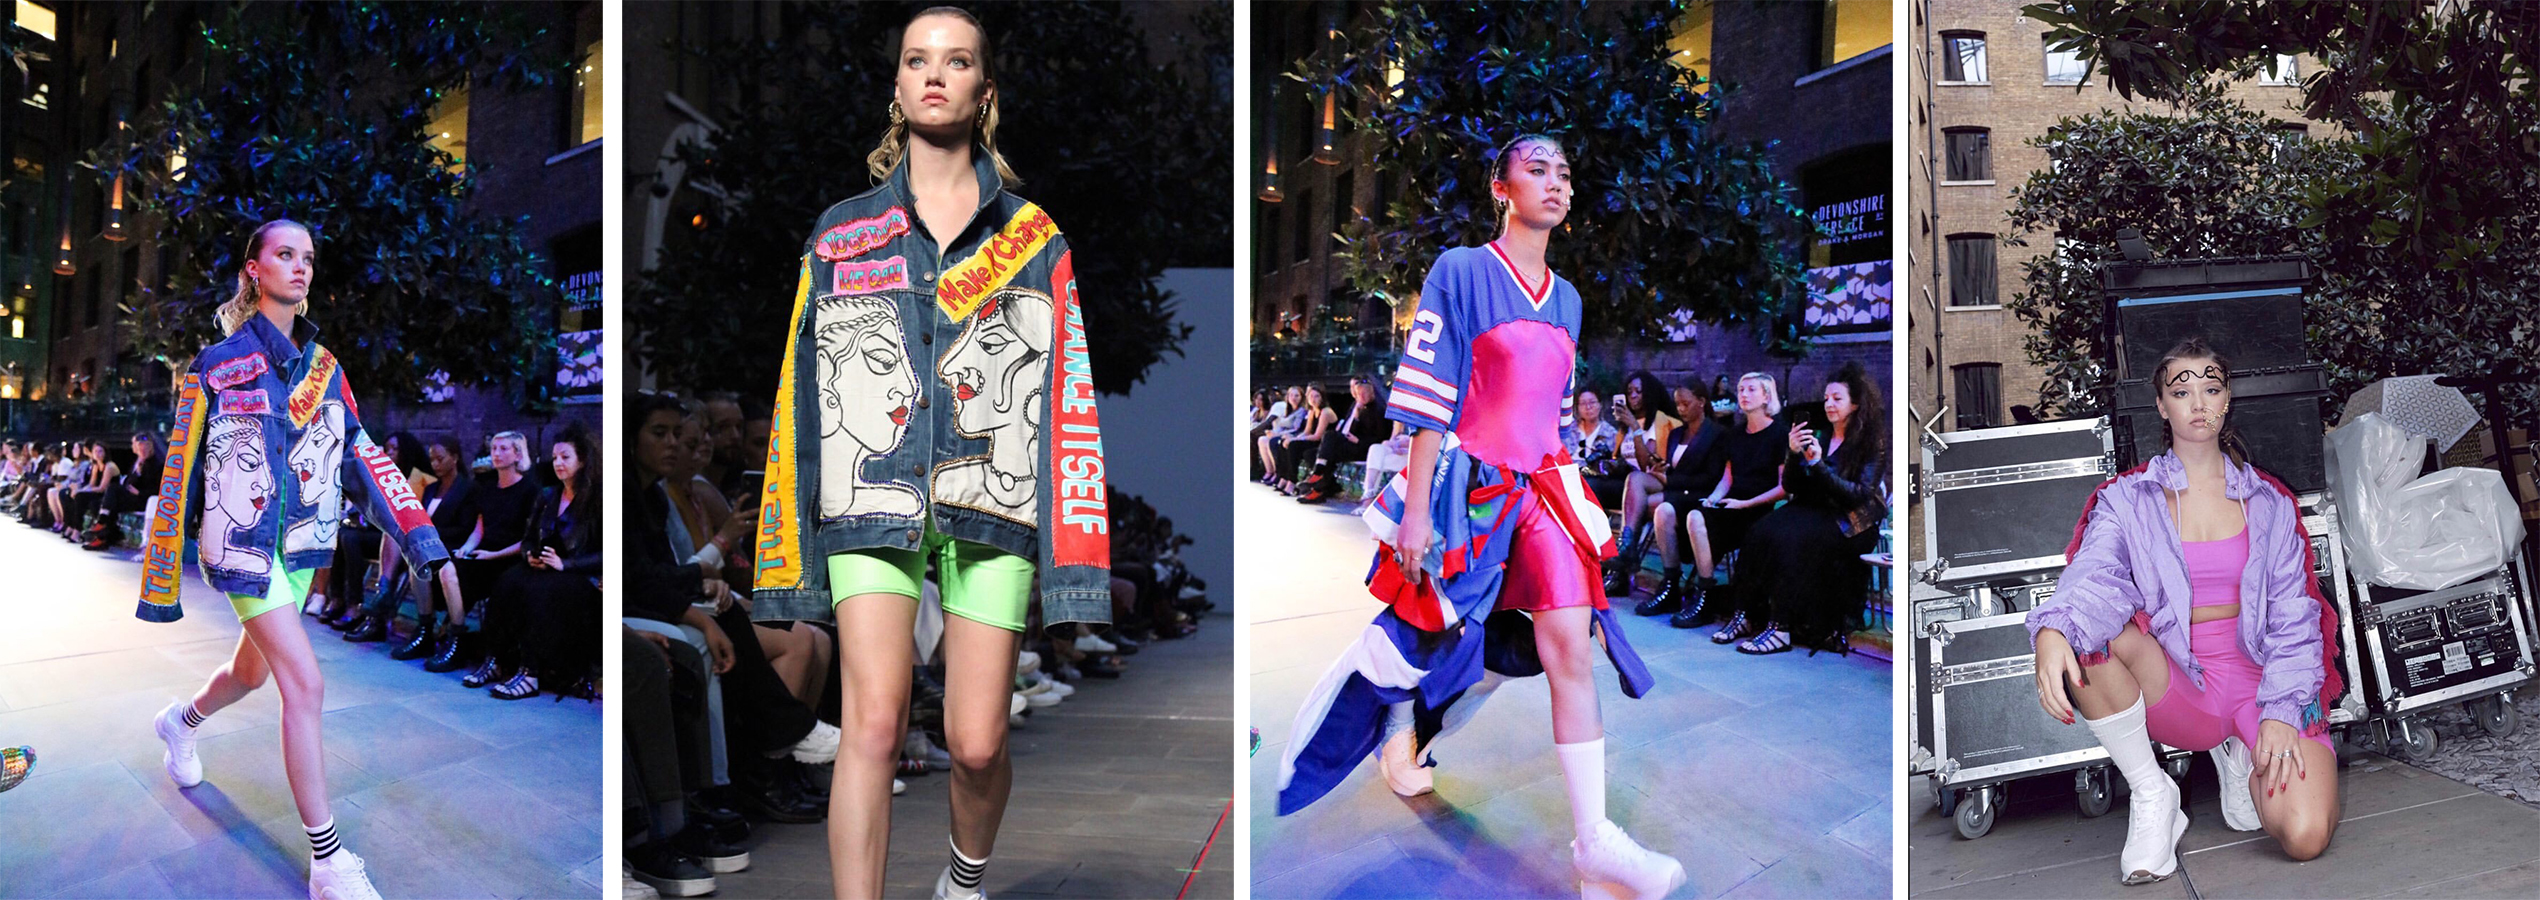 Models walking on catwalk wearing brightly coloured sportswear